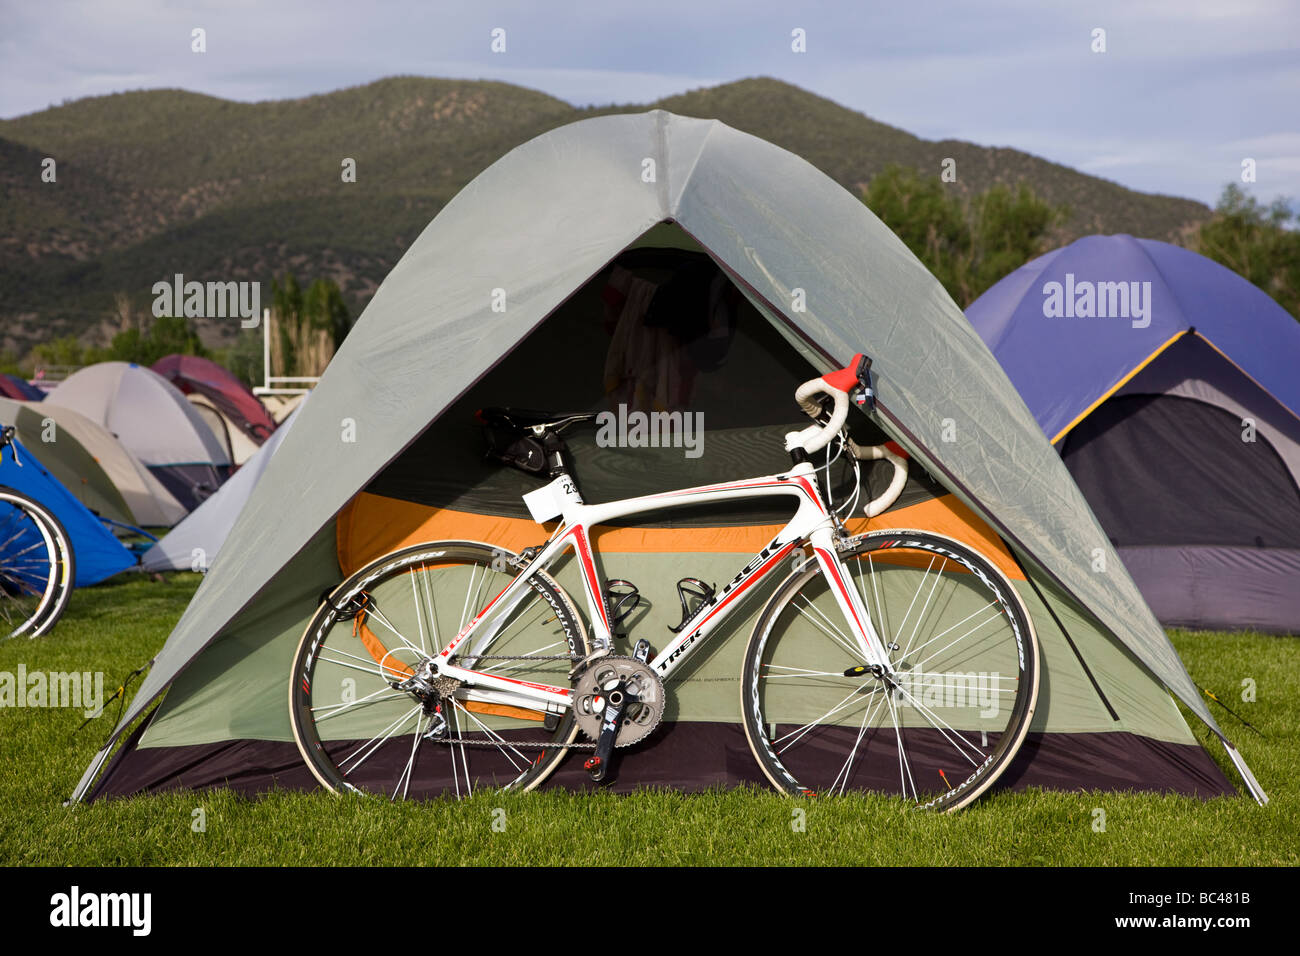 Camping an der Salida High School in Colorado während der jährlichen Ride The Rockies Radfahrer Fahrrad tour Stockfoto